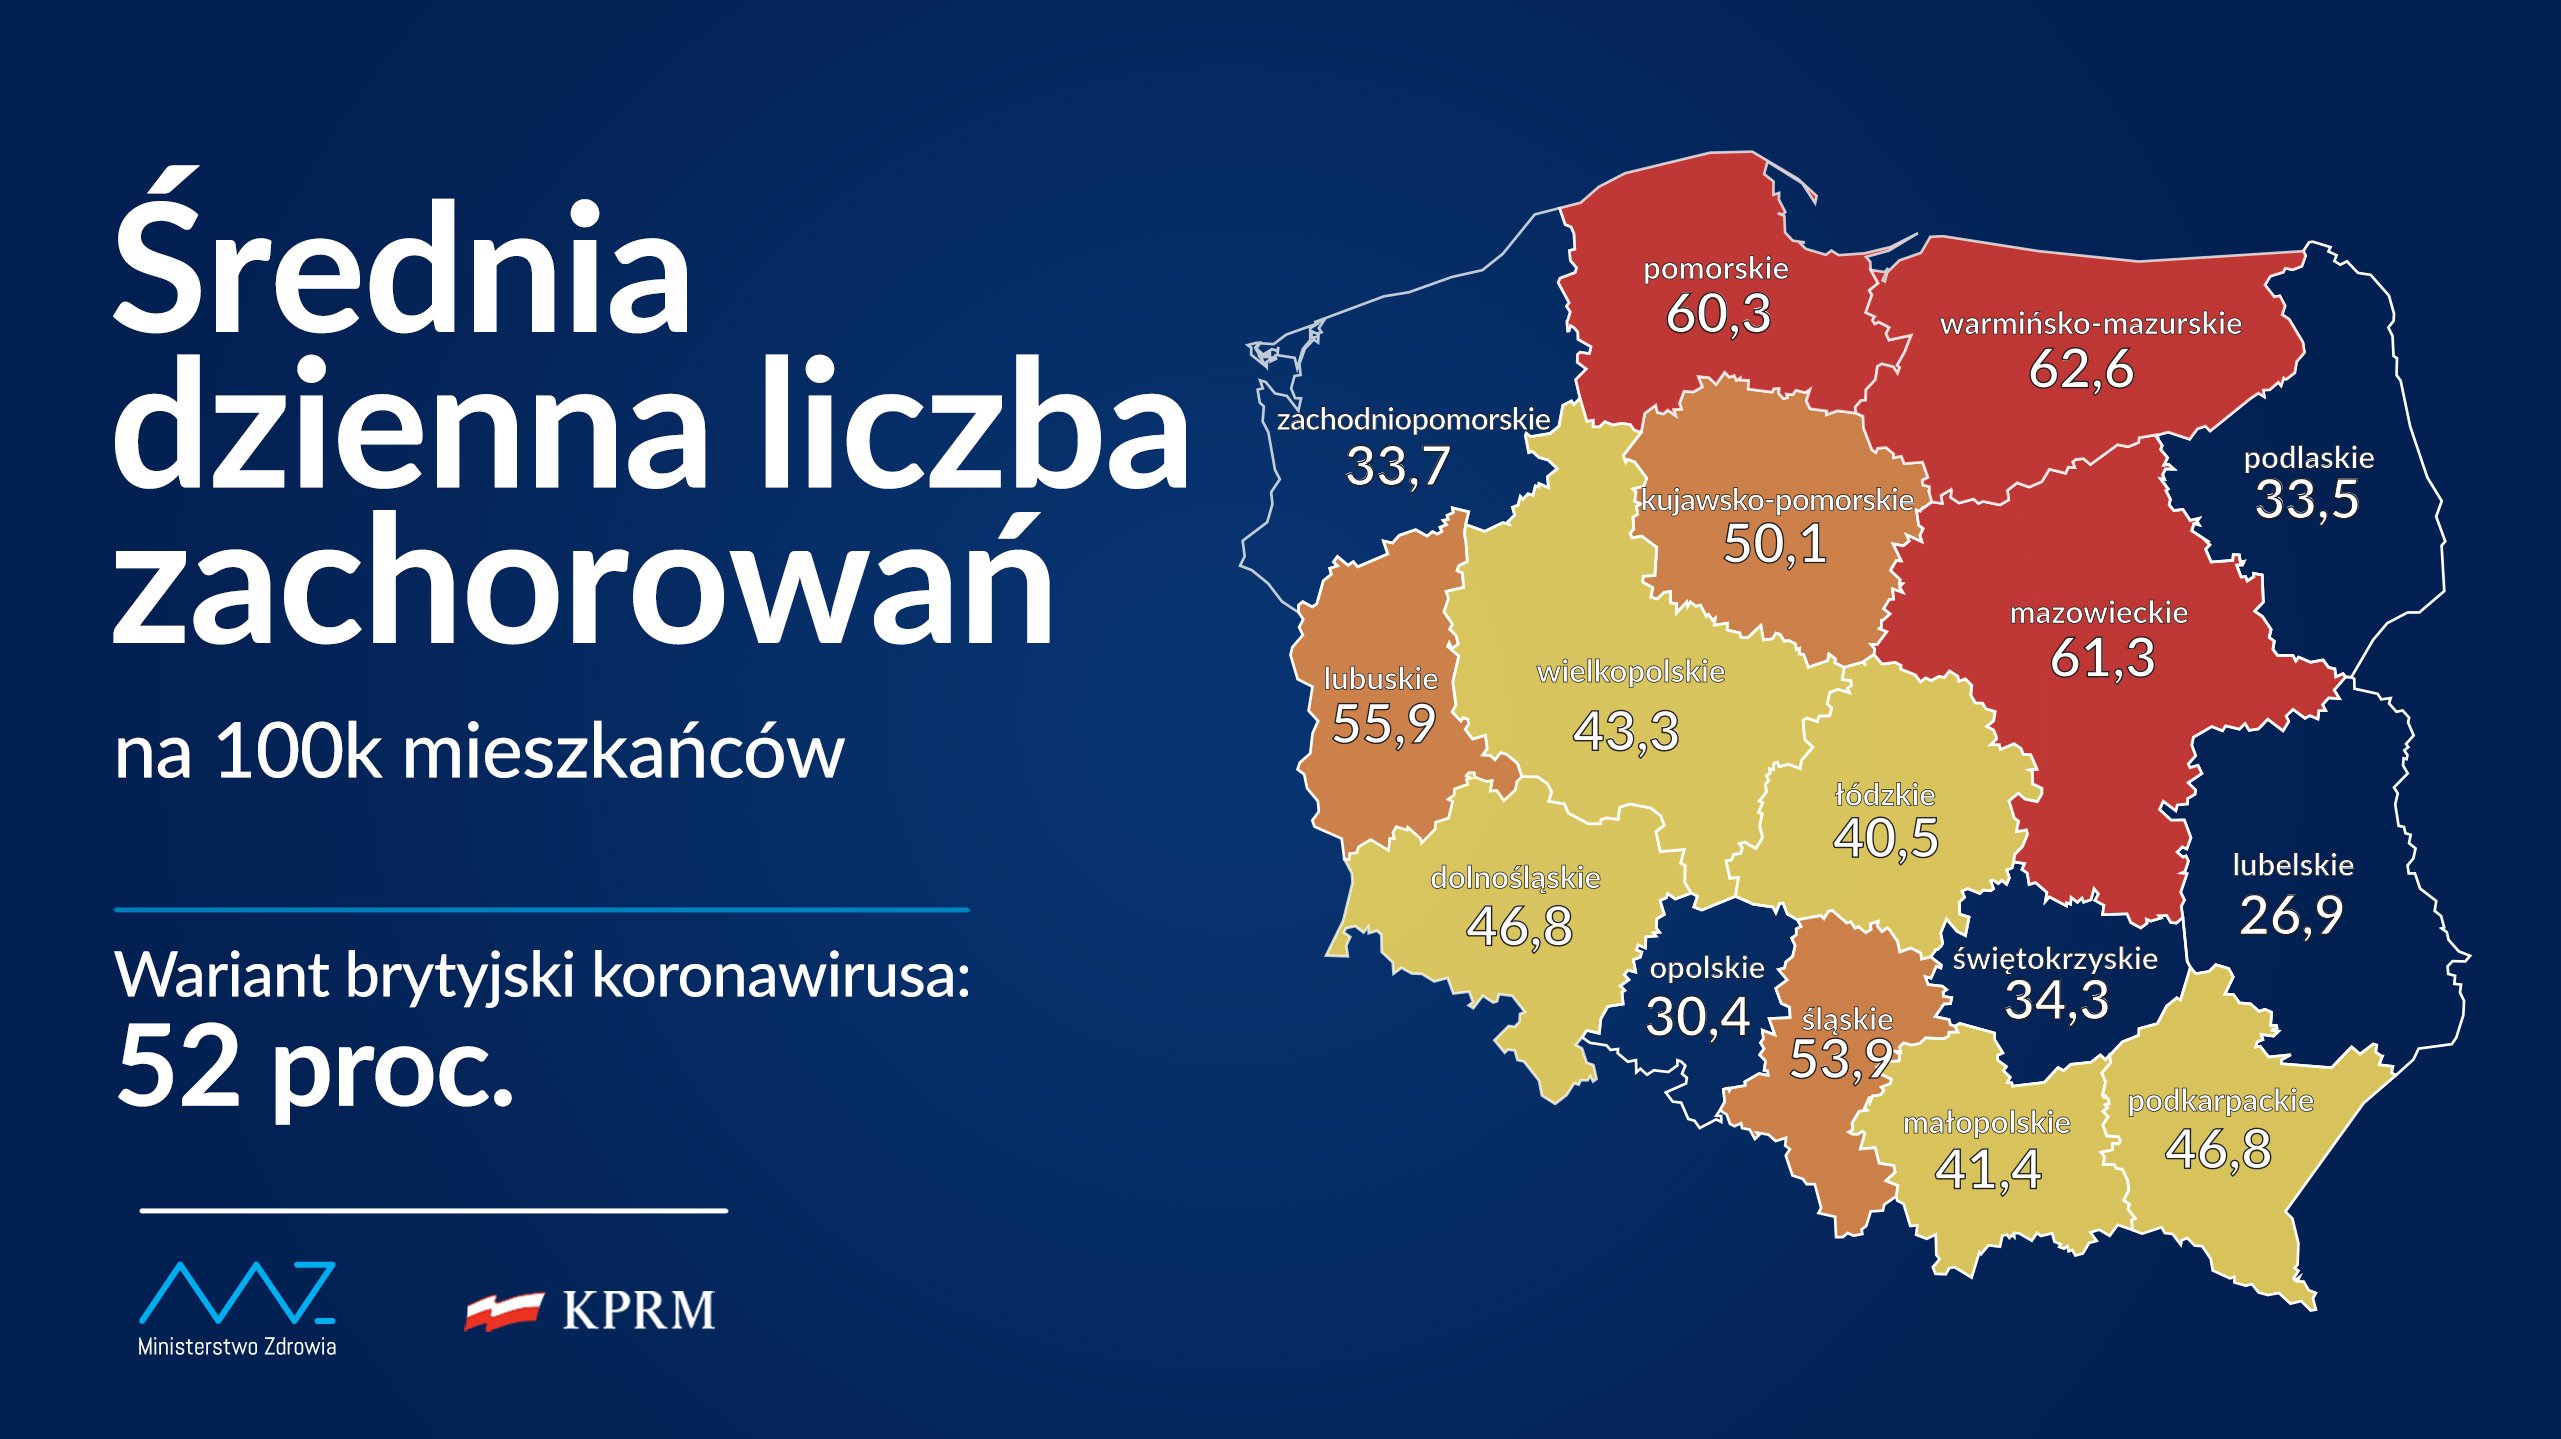 Średnia dzienna liczba zachorowań w Polsce. Źródło: KPRM